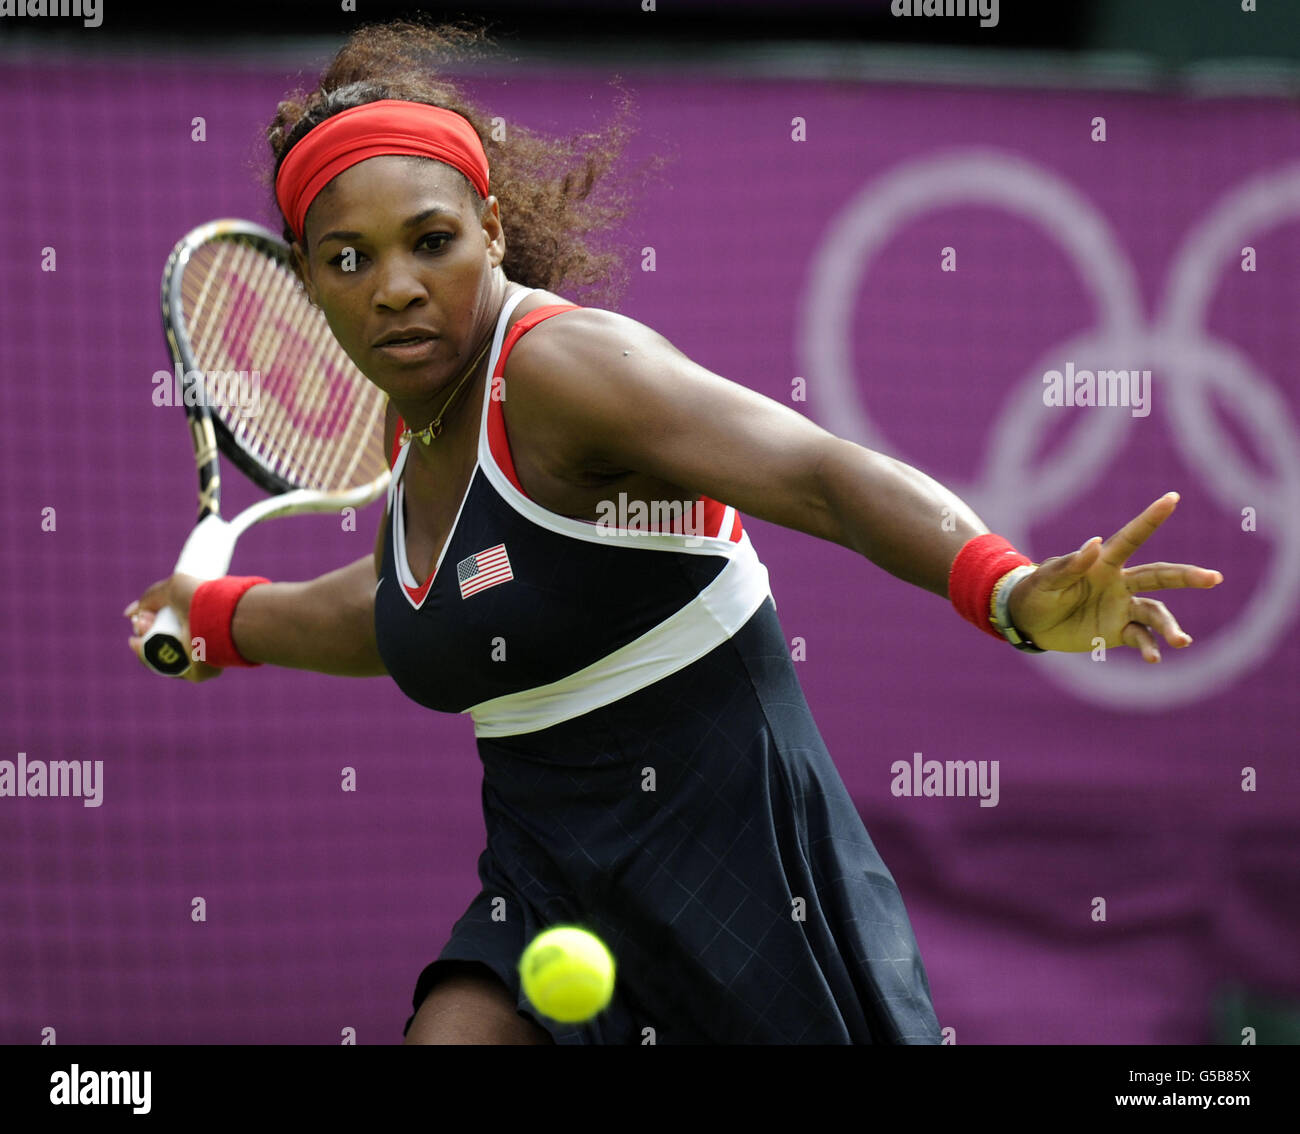 Giochi Olimpici di Londra - 1° giorno. Serena Williams in azione negli Stati Uniti durante il primo round dei Women's Singles presso la sede olimpica del tennis, Wimbledon. Foto Stock